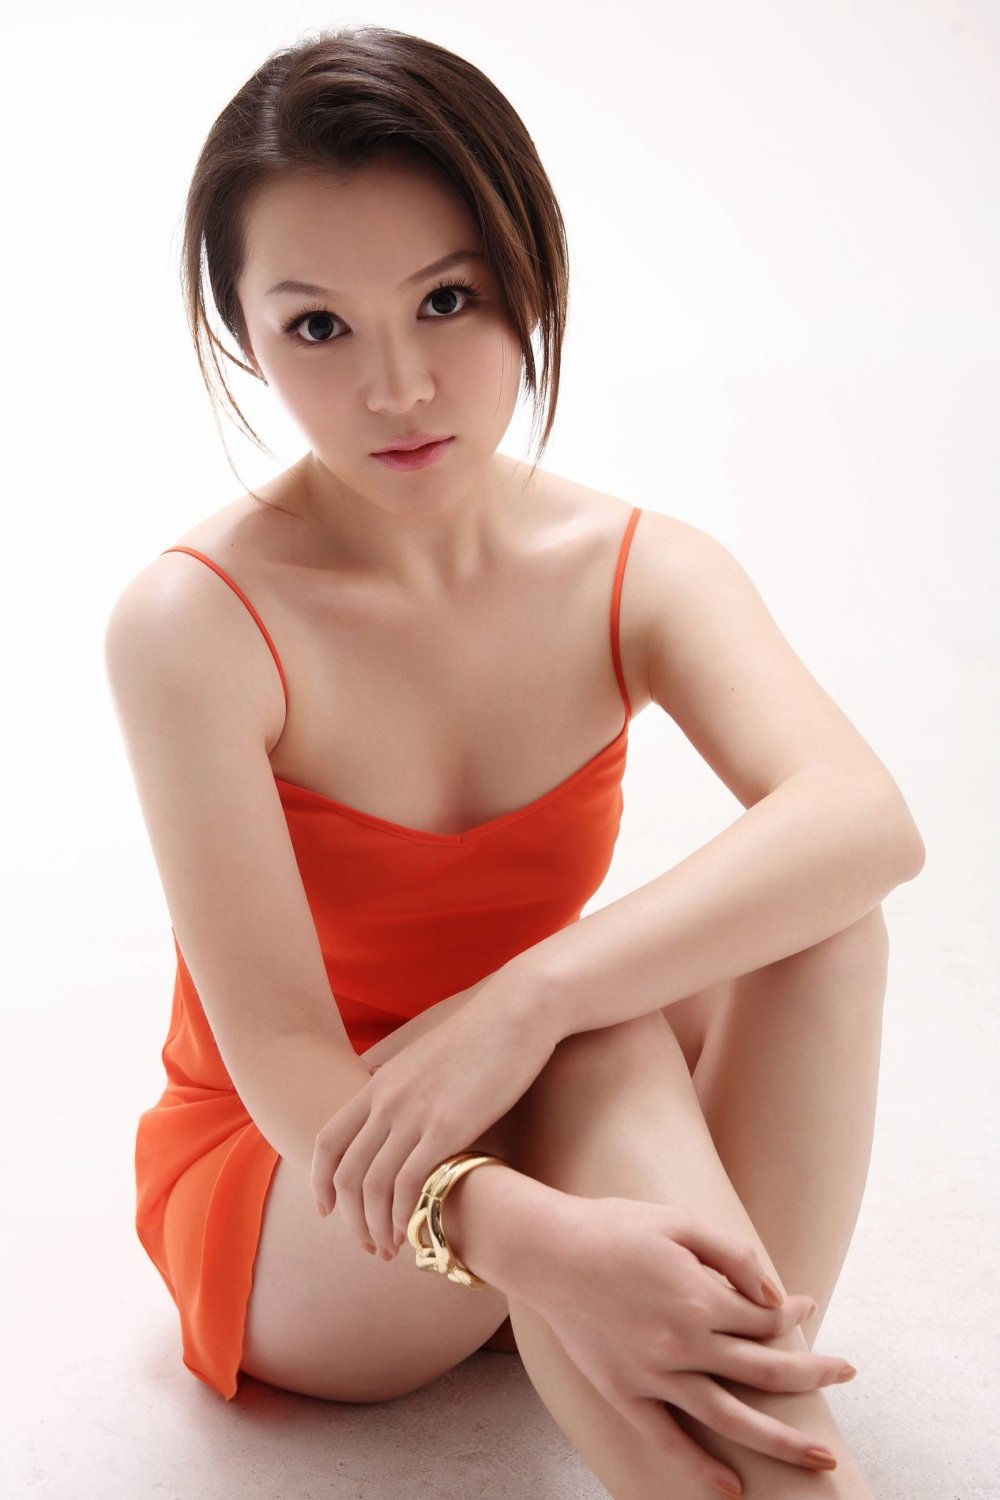 王紫伊 Sexy and Hottest Photos , Latest Pics